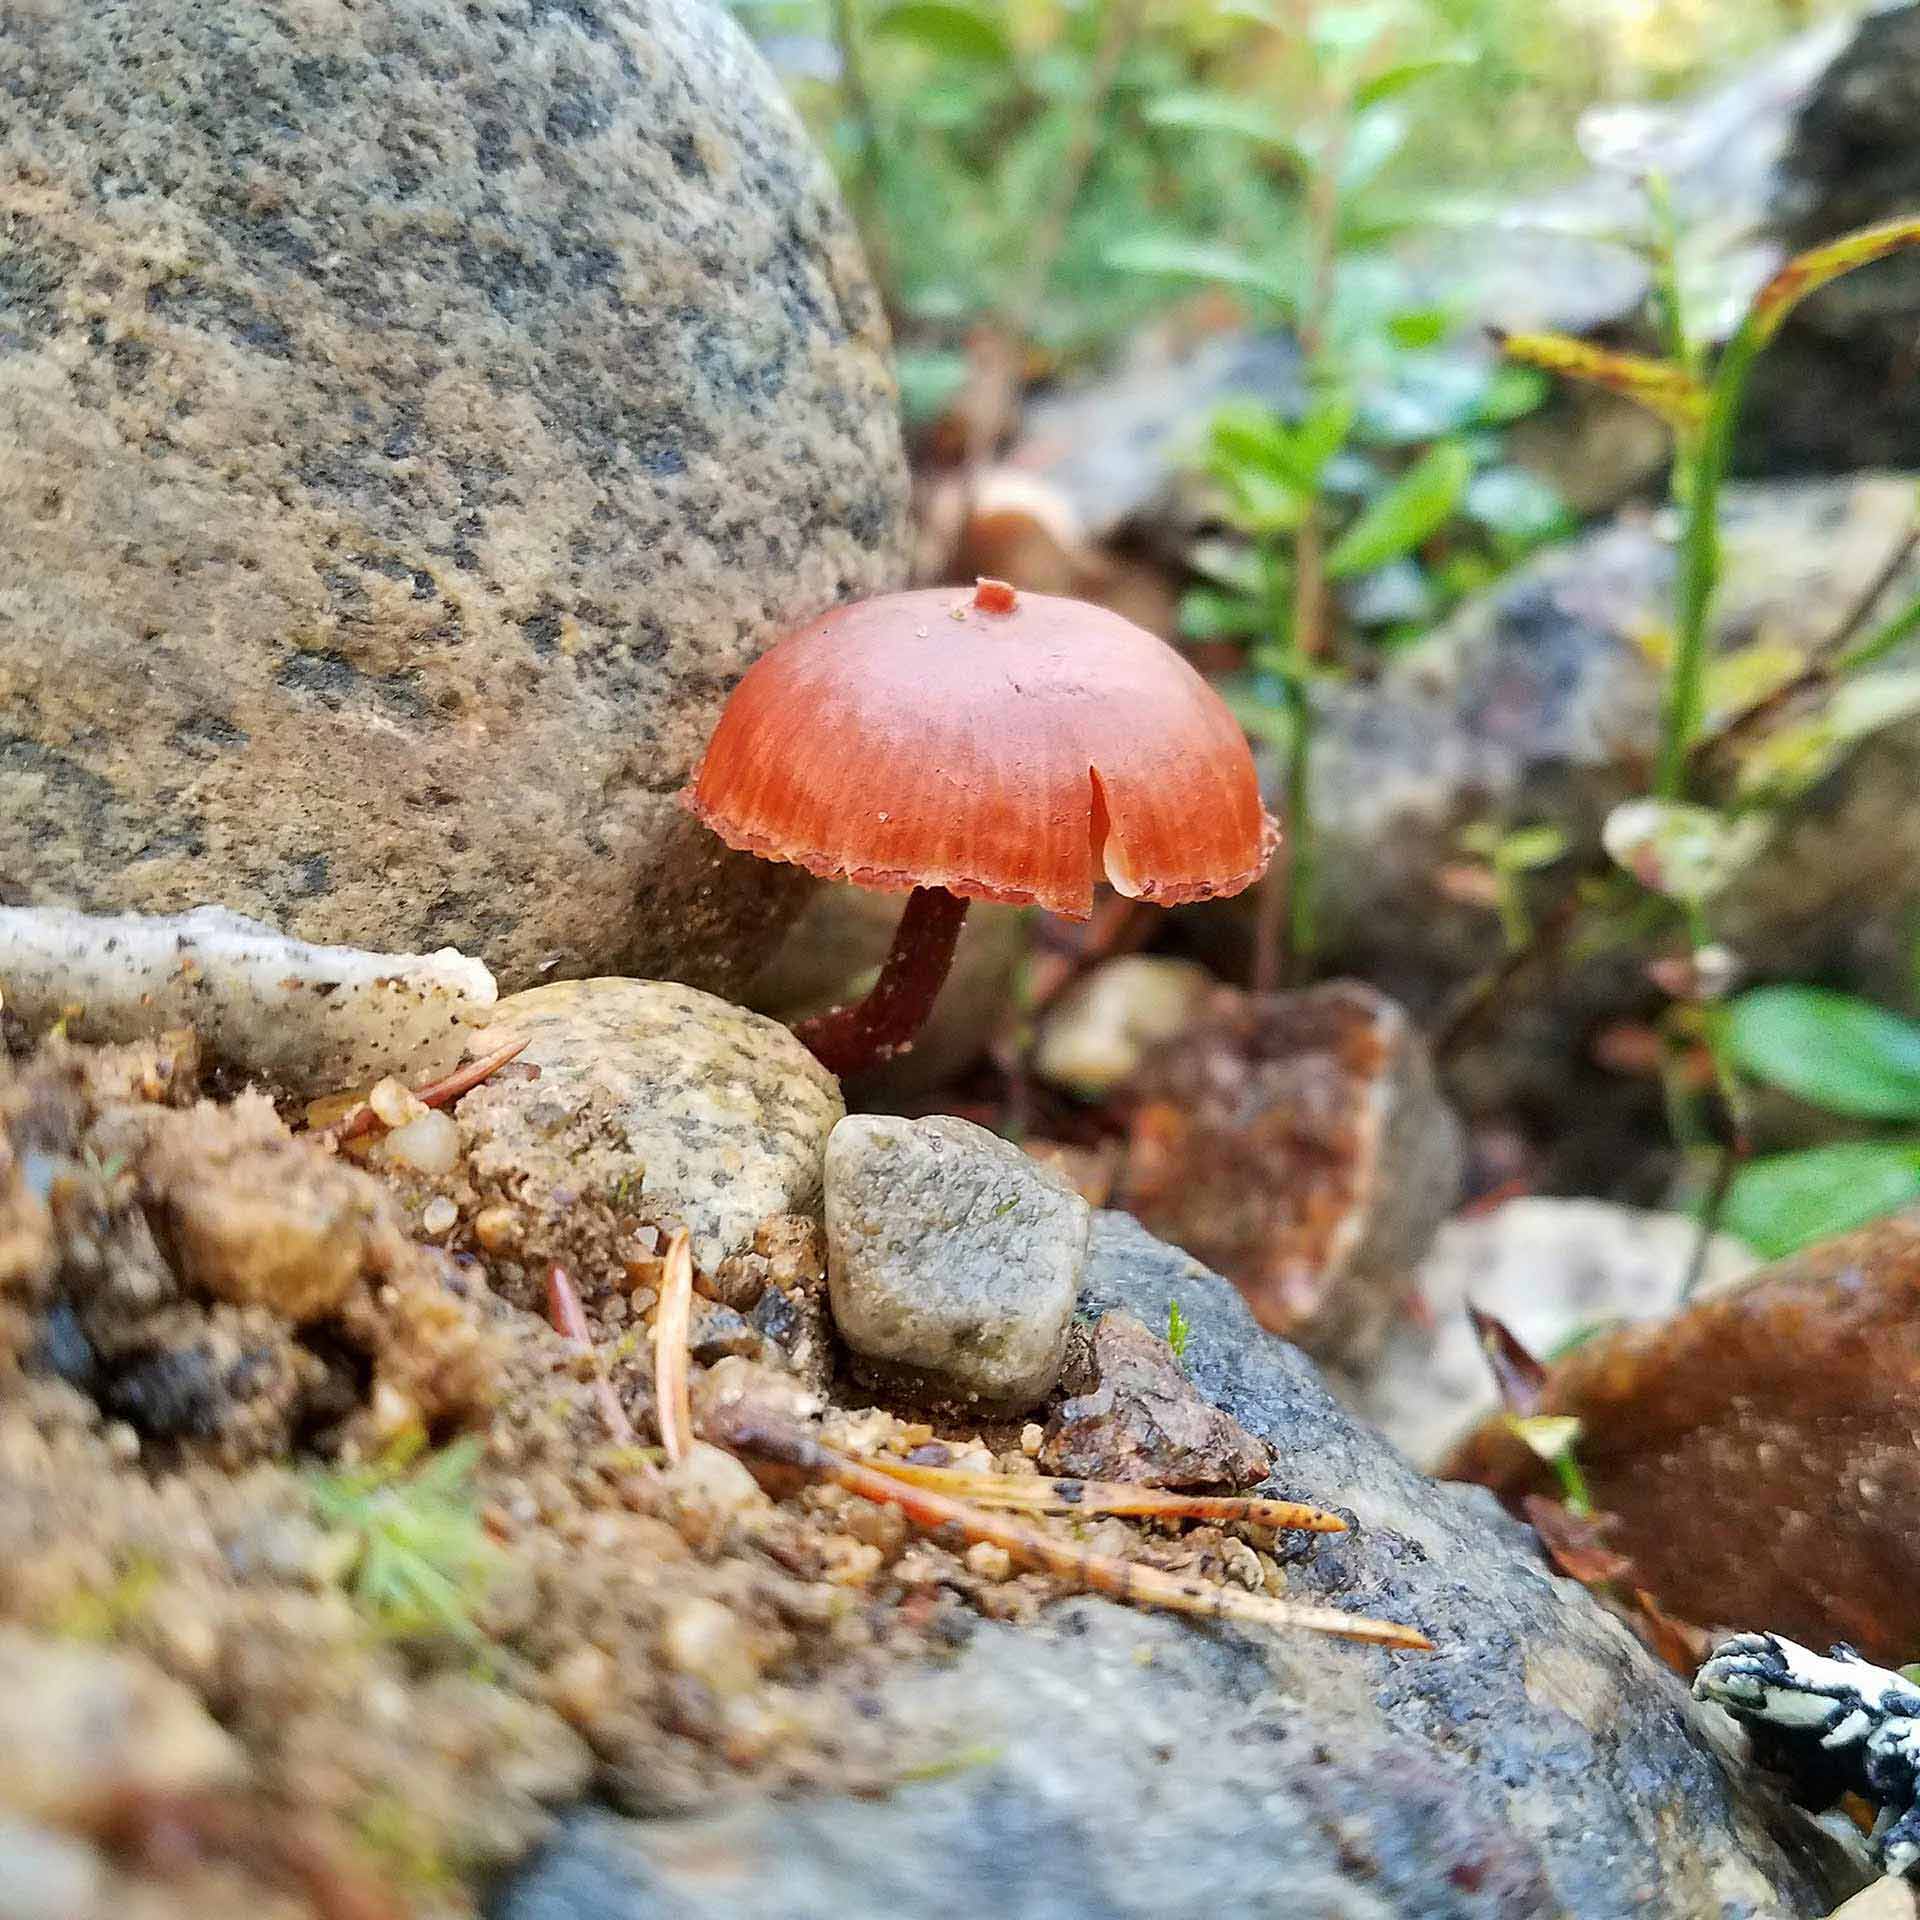 One orange mushroom growing in between two rocks.